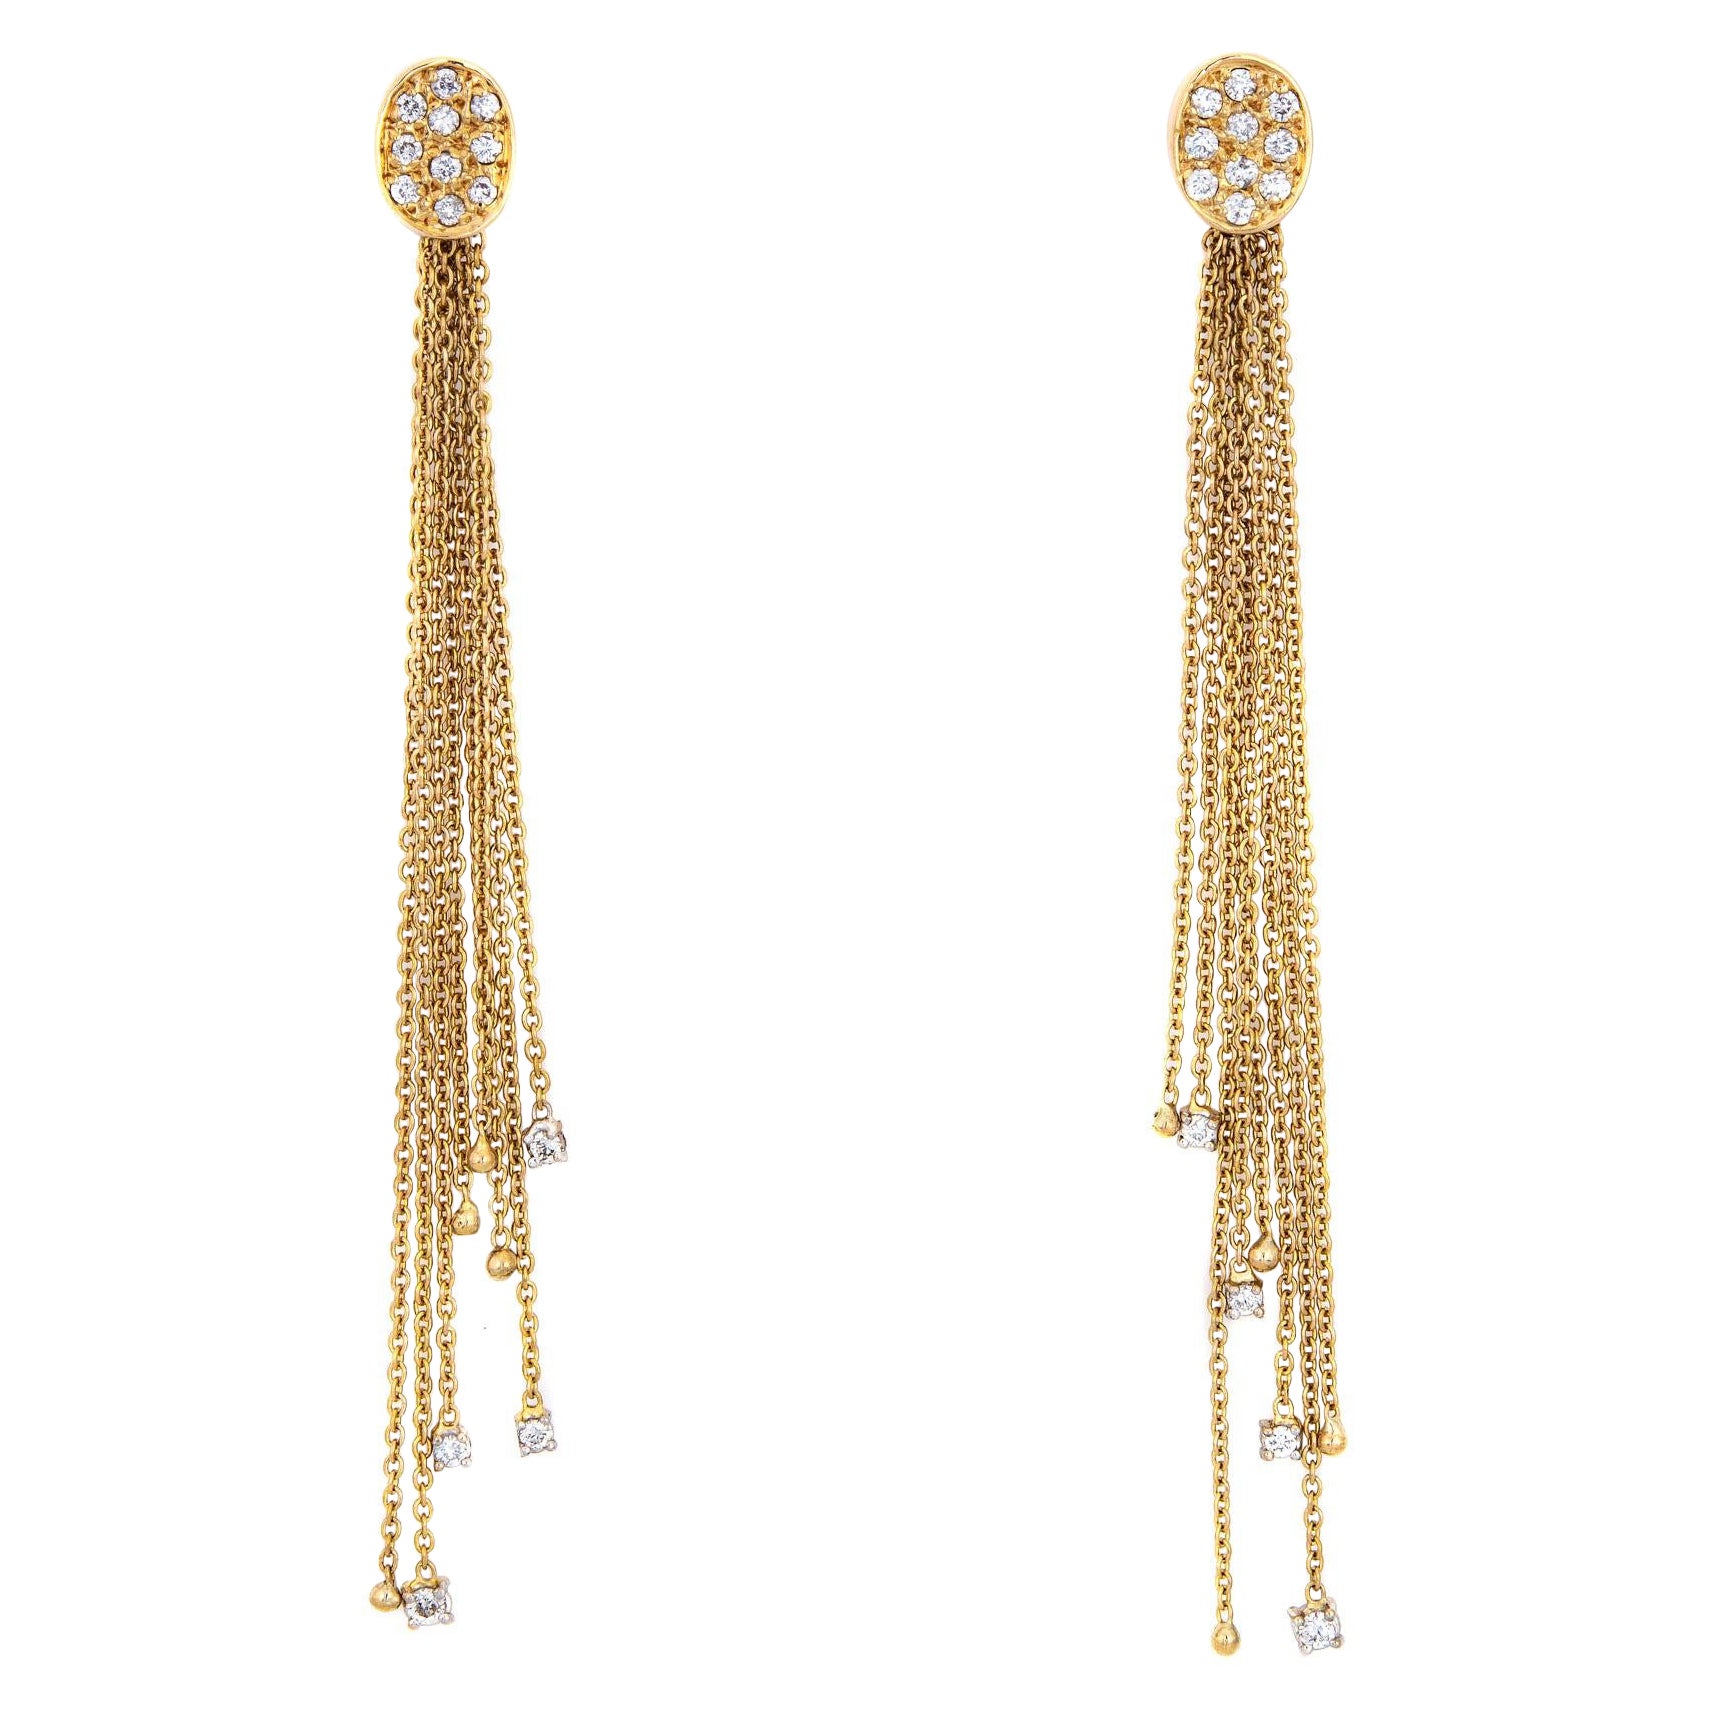 Diamond Long Fringe Earrings Vintage 14k Yellow Gold 3.5" Drops Fine Jewelry For Sale